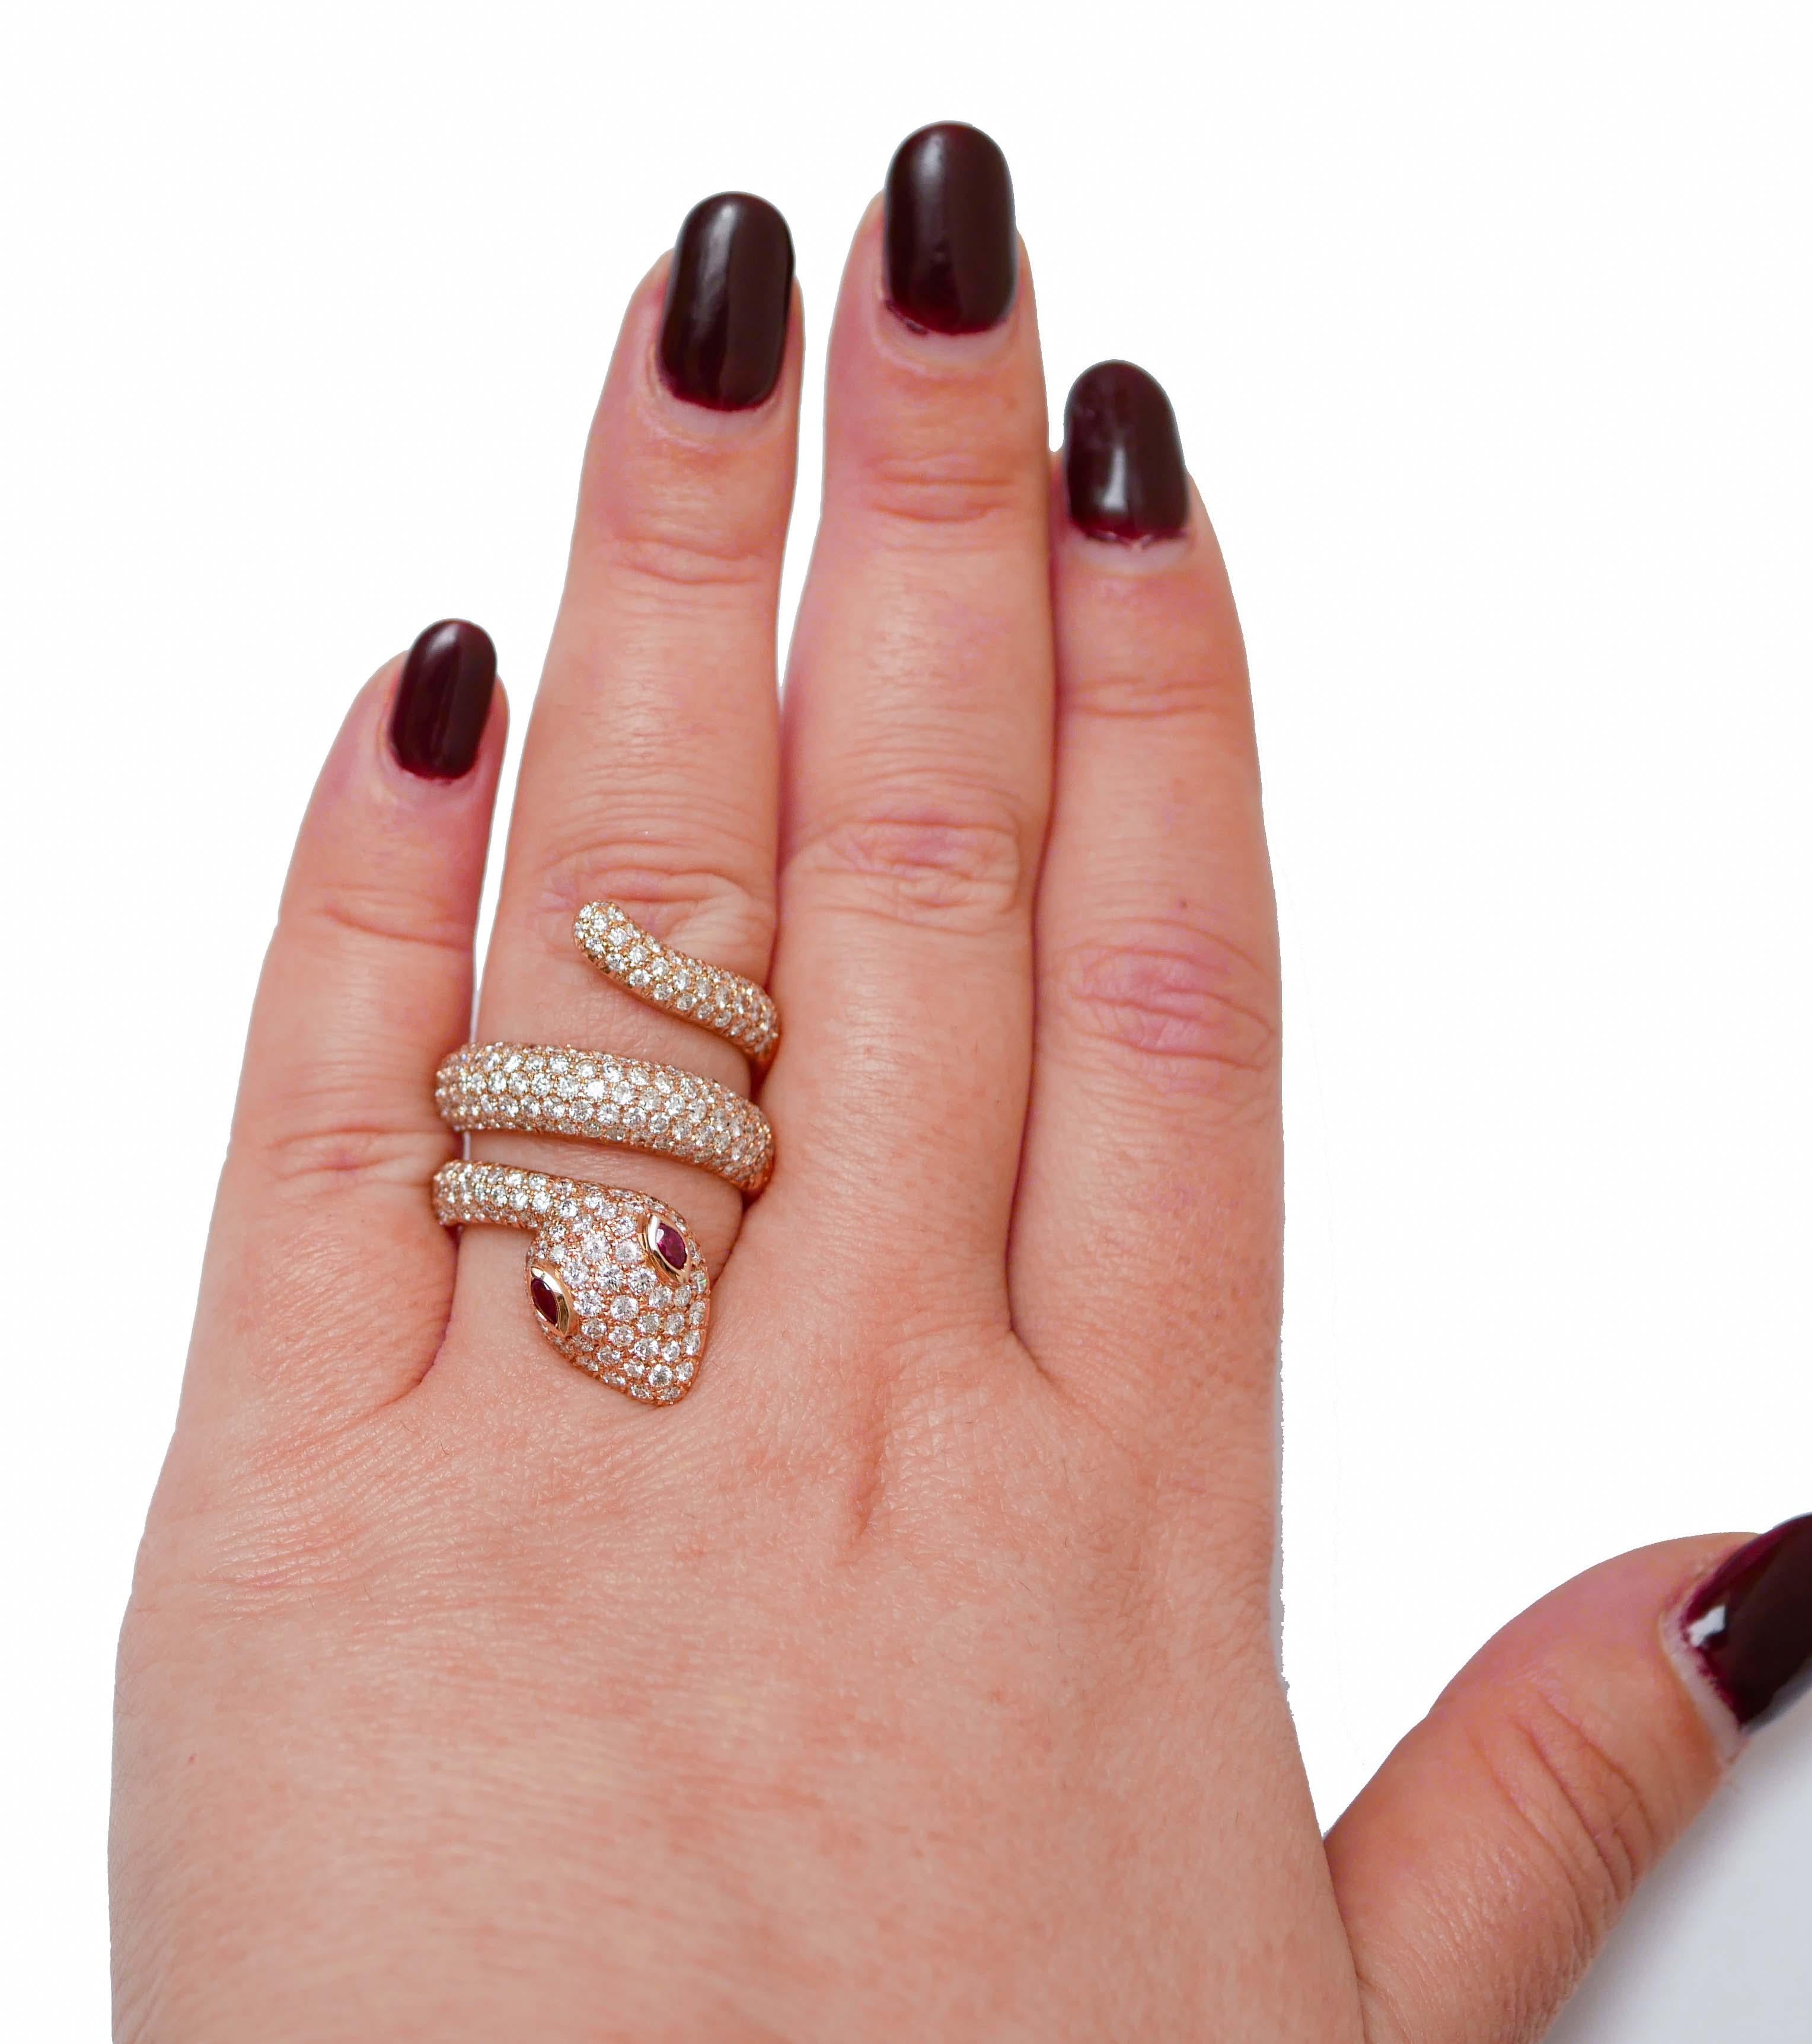 Mixed Cut Rubies, Diamonds, 18 Karat Rose Gold Snake Ring. For Sale